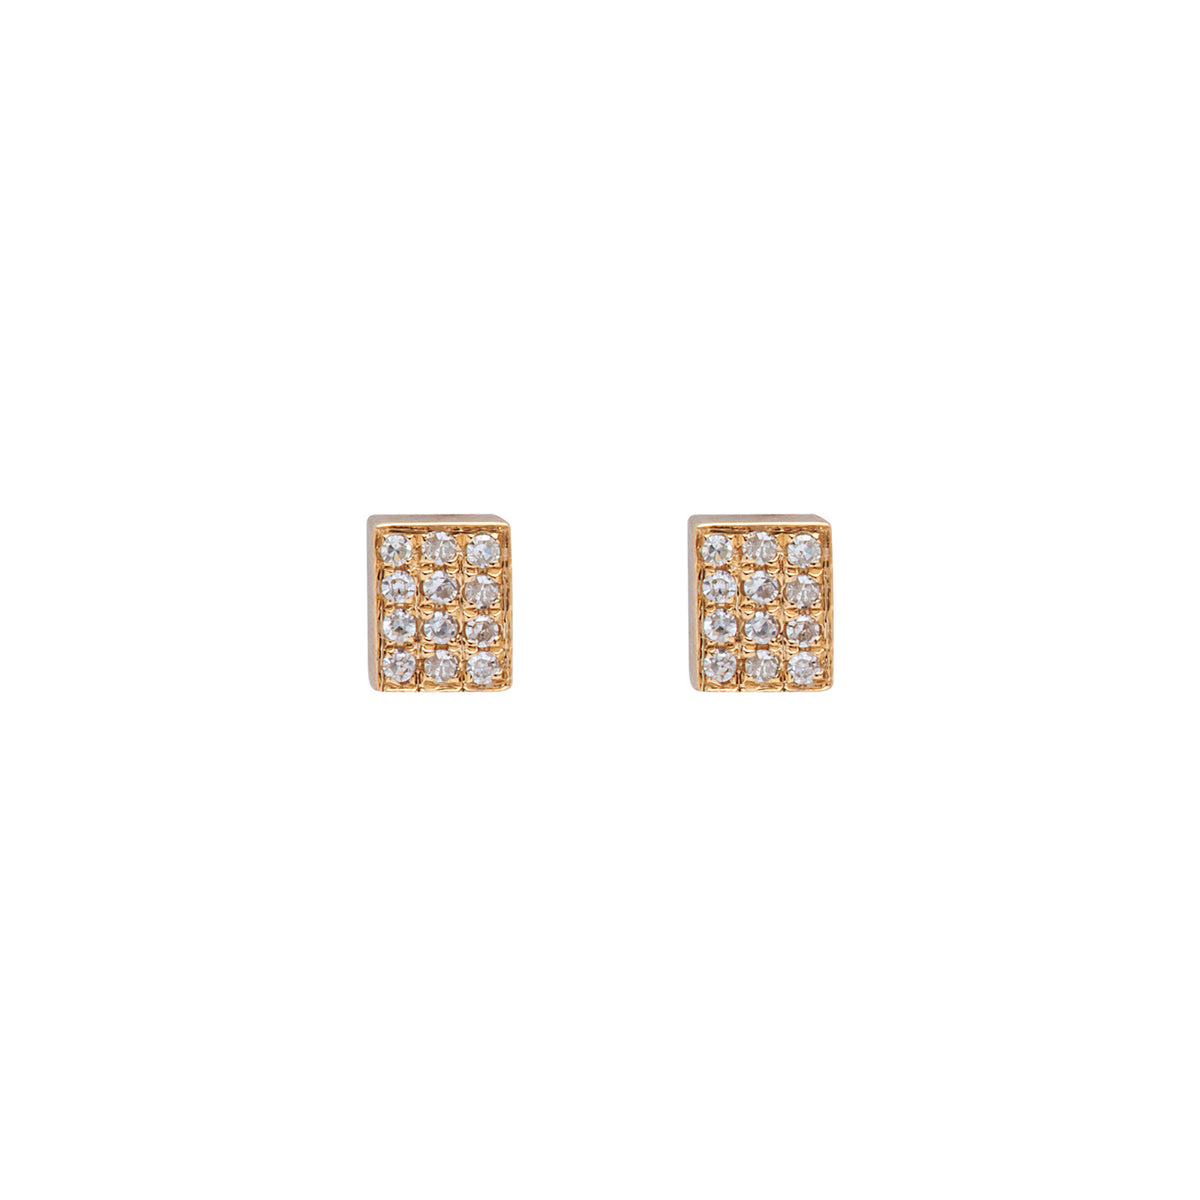 Diamond square studs. Square earrings